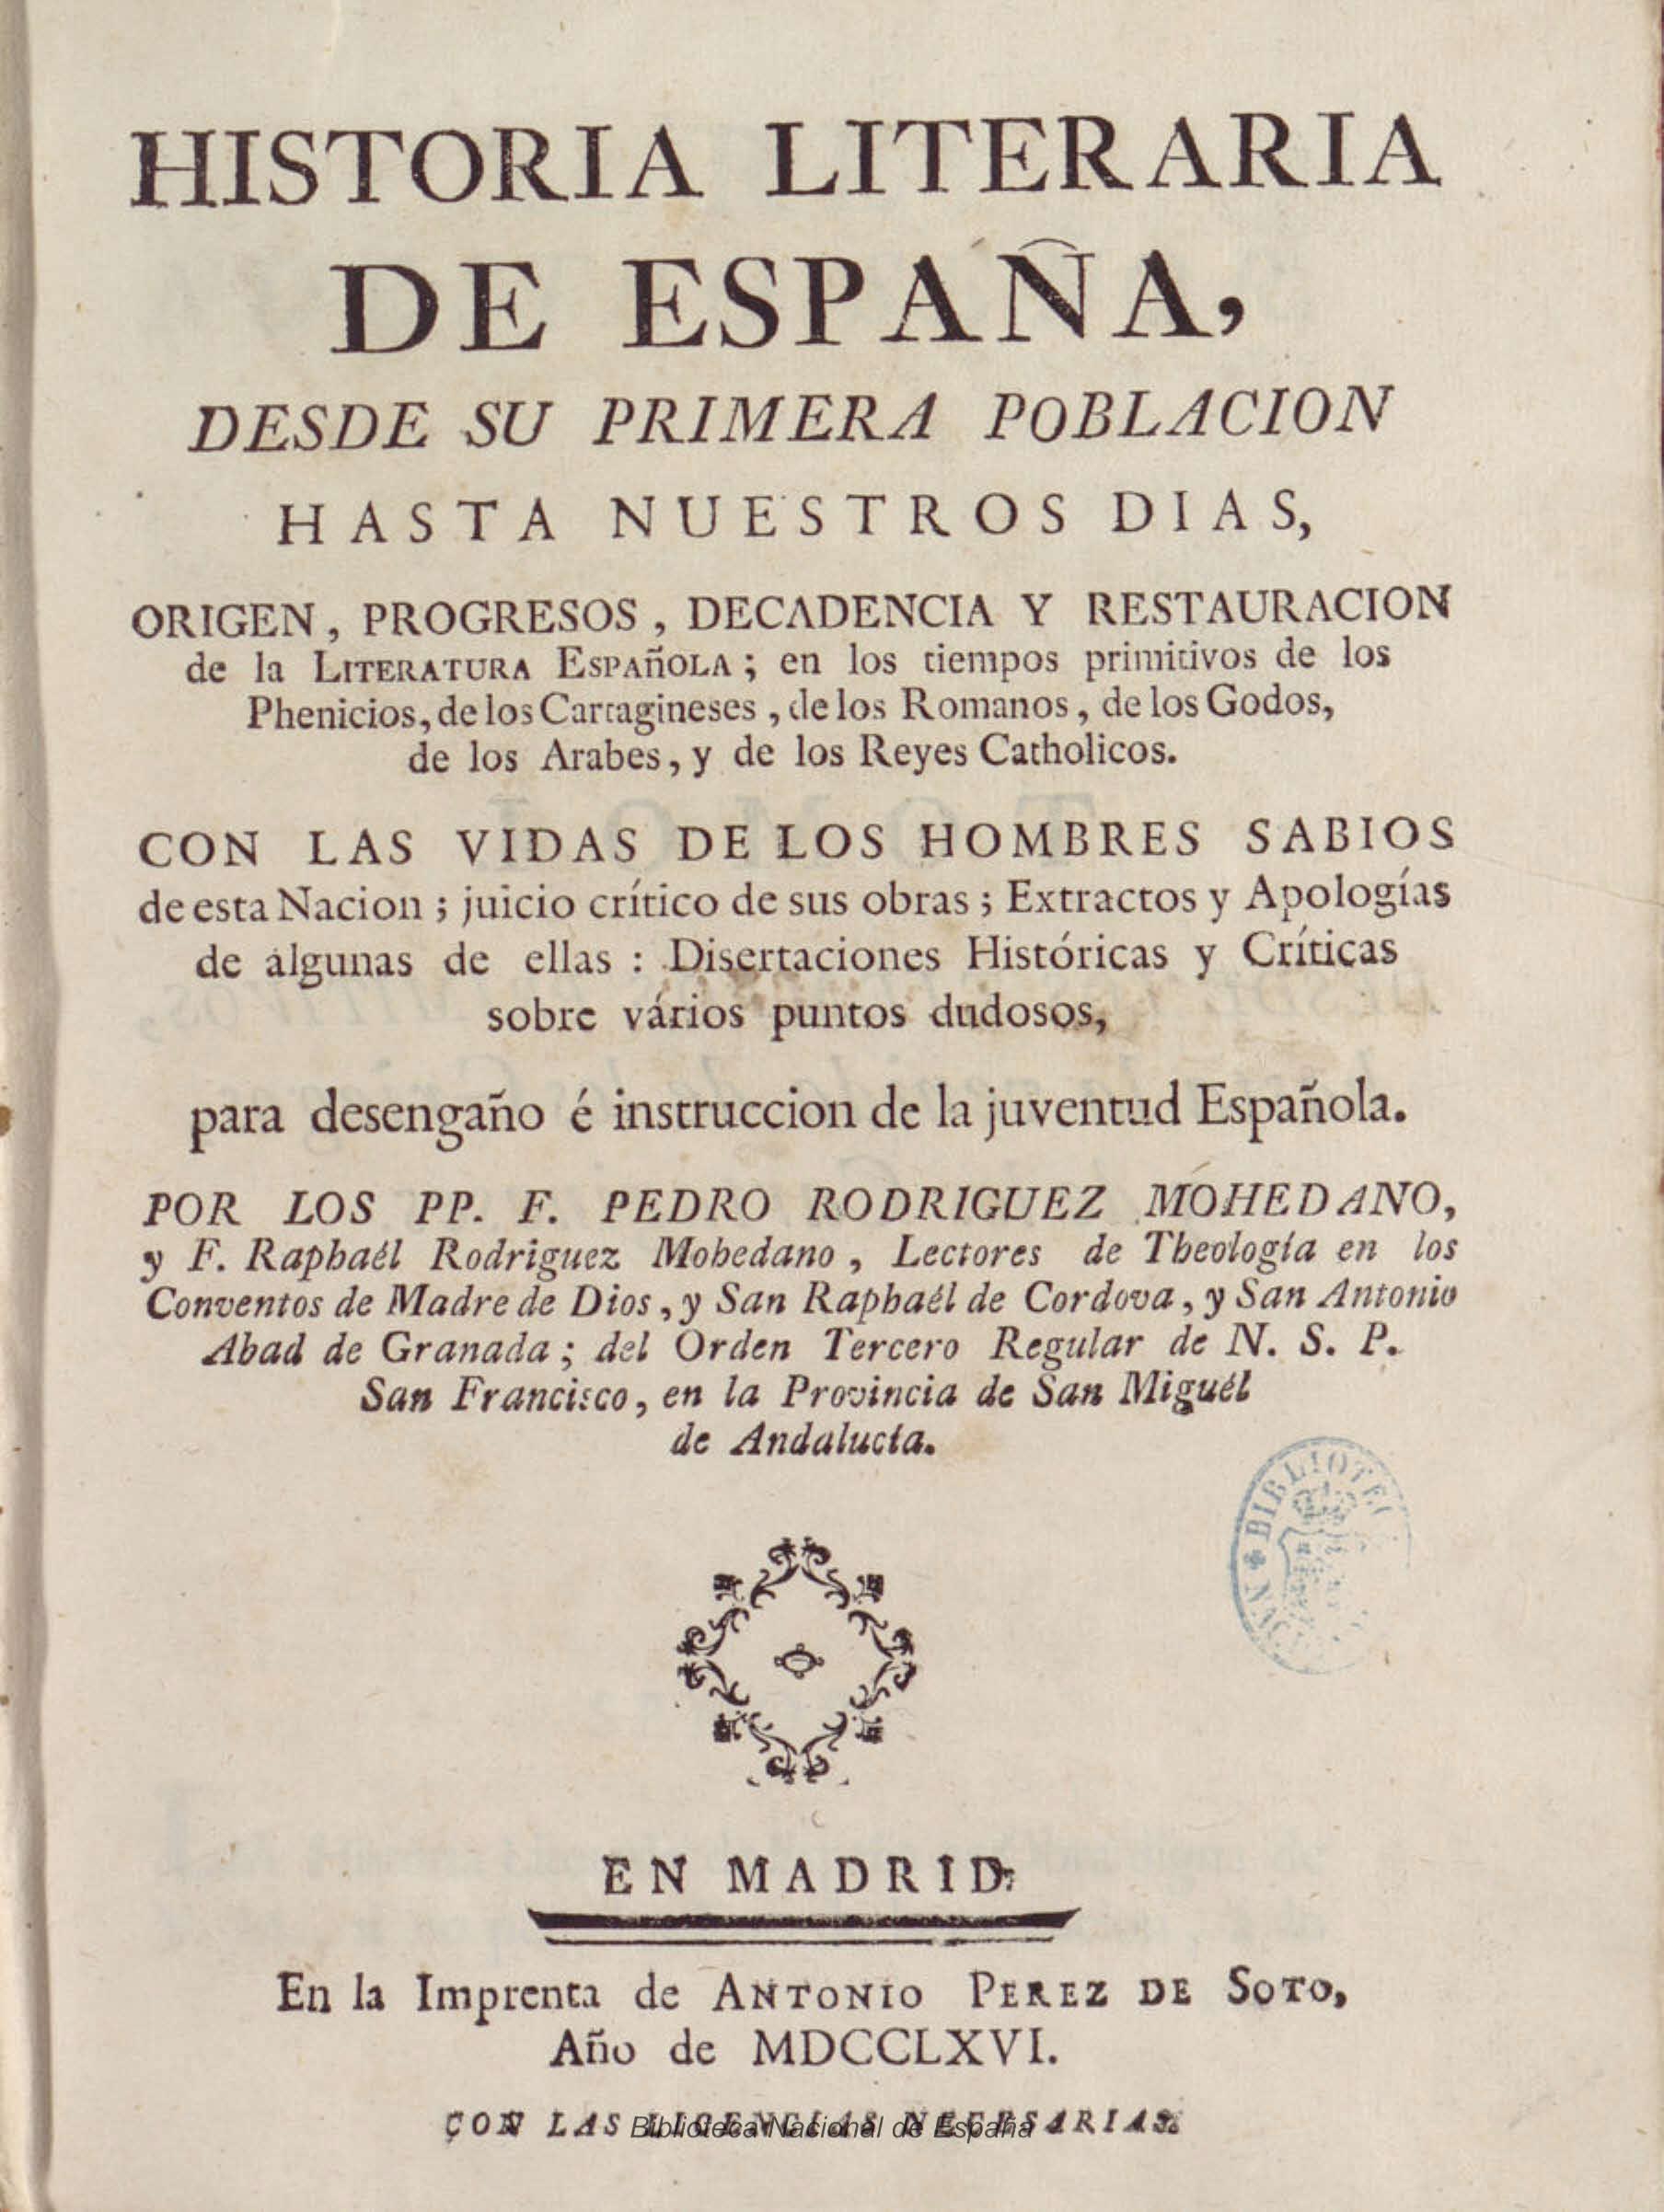 Historia literaria de España, desde su primera población hasta nuestros días, Tomo I